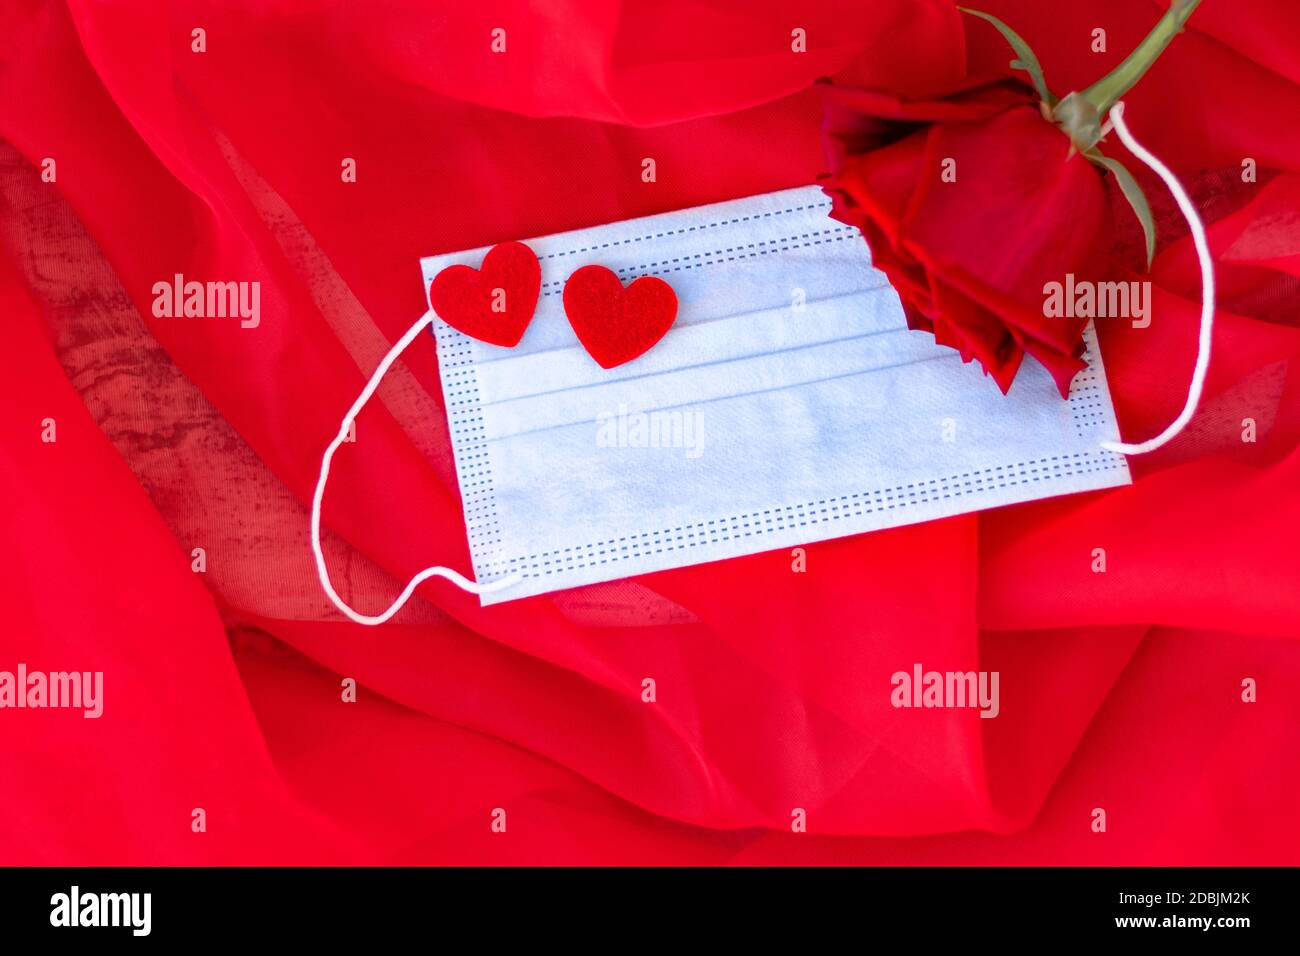 Blaue medizinische Schutzmaske mit zwei roten Herzen auf rotem Hintergrund. Rote Rose neben Maske. Romantisches Geschenk zum Valentinstag. Liebe. Konzept des Heiratsvorschlags. Weichfokus. Speicherplatz kopieren. Draufsicht Stockfoto